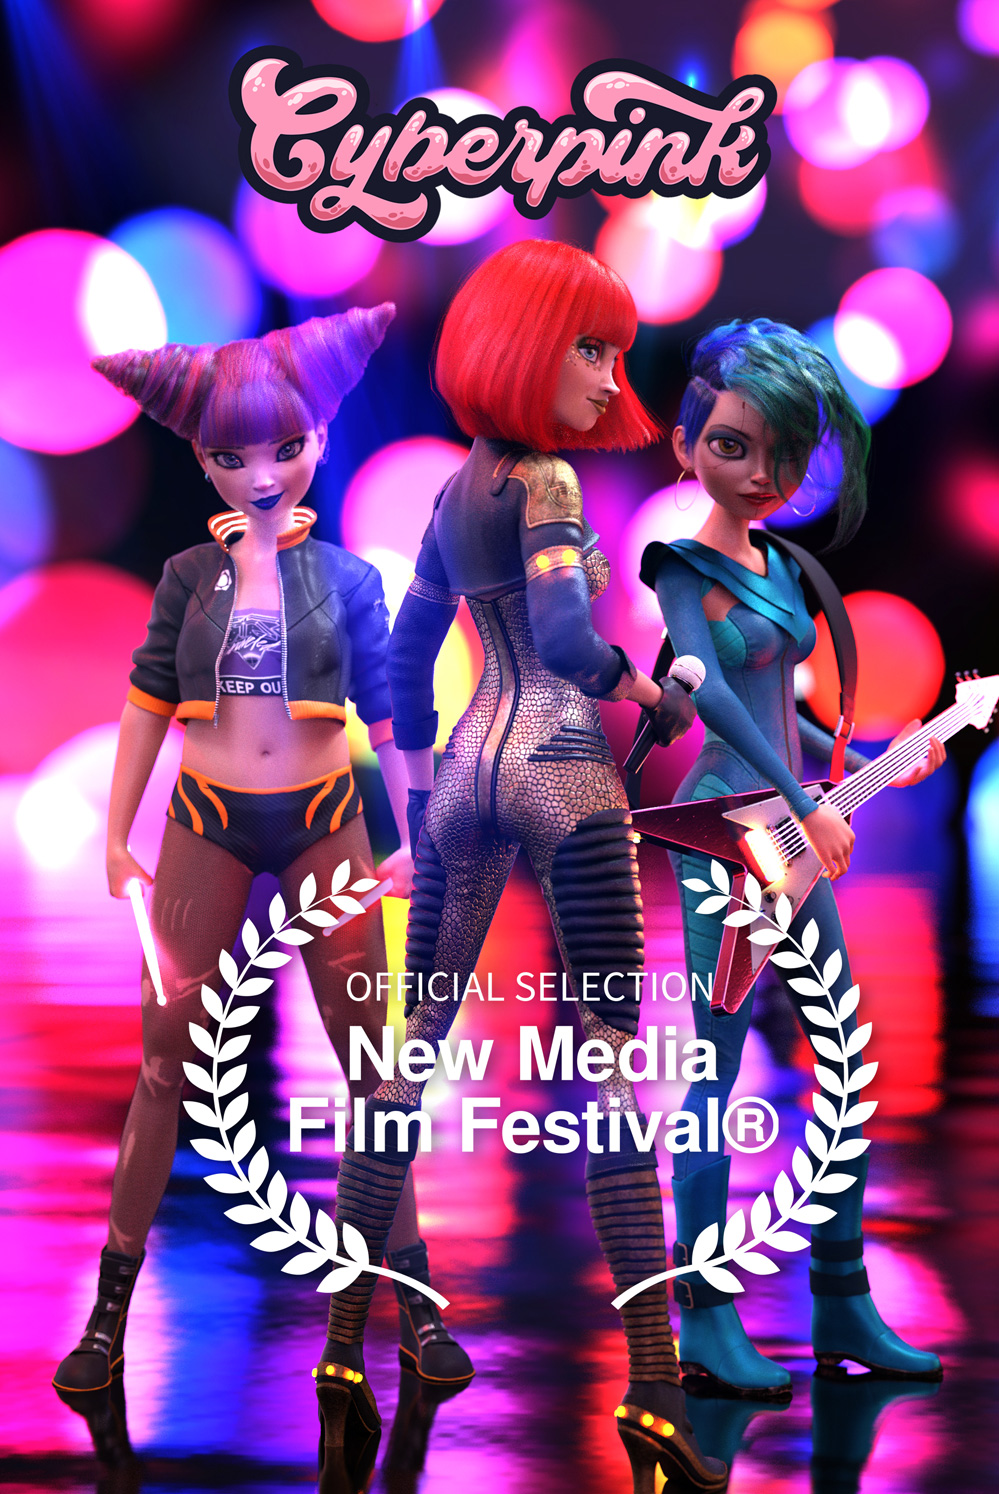 Cyberpink® film festival